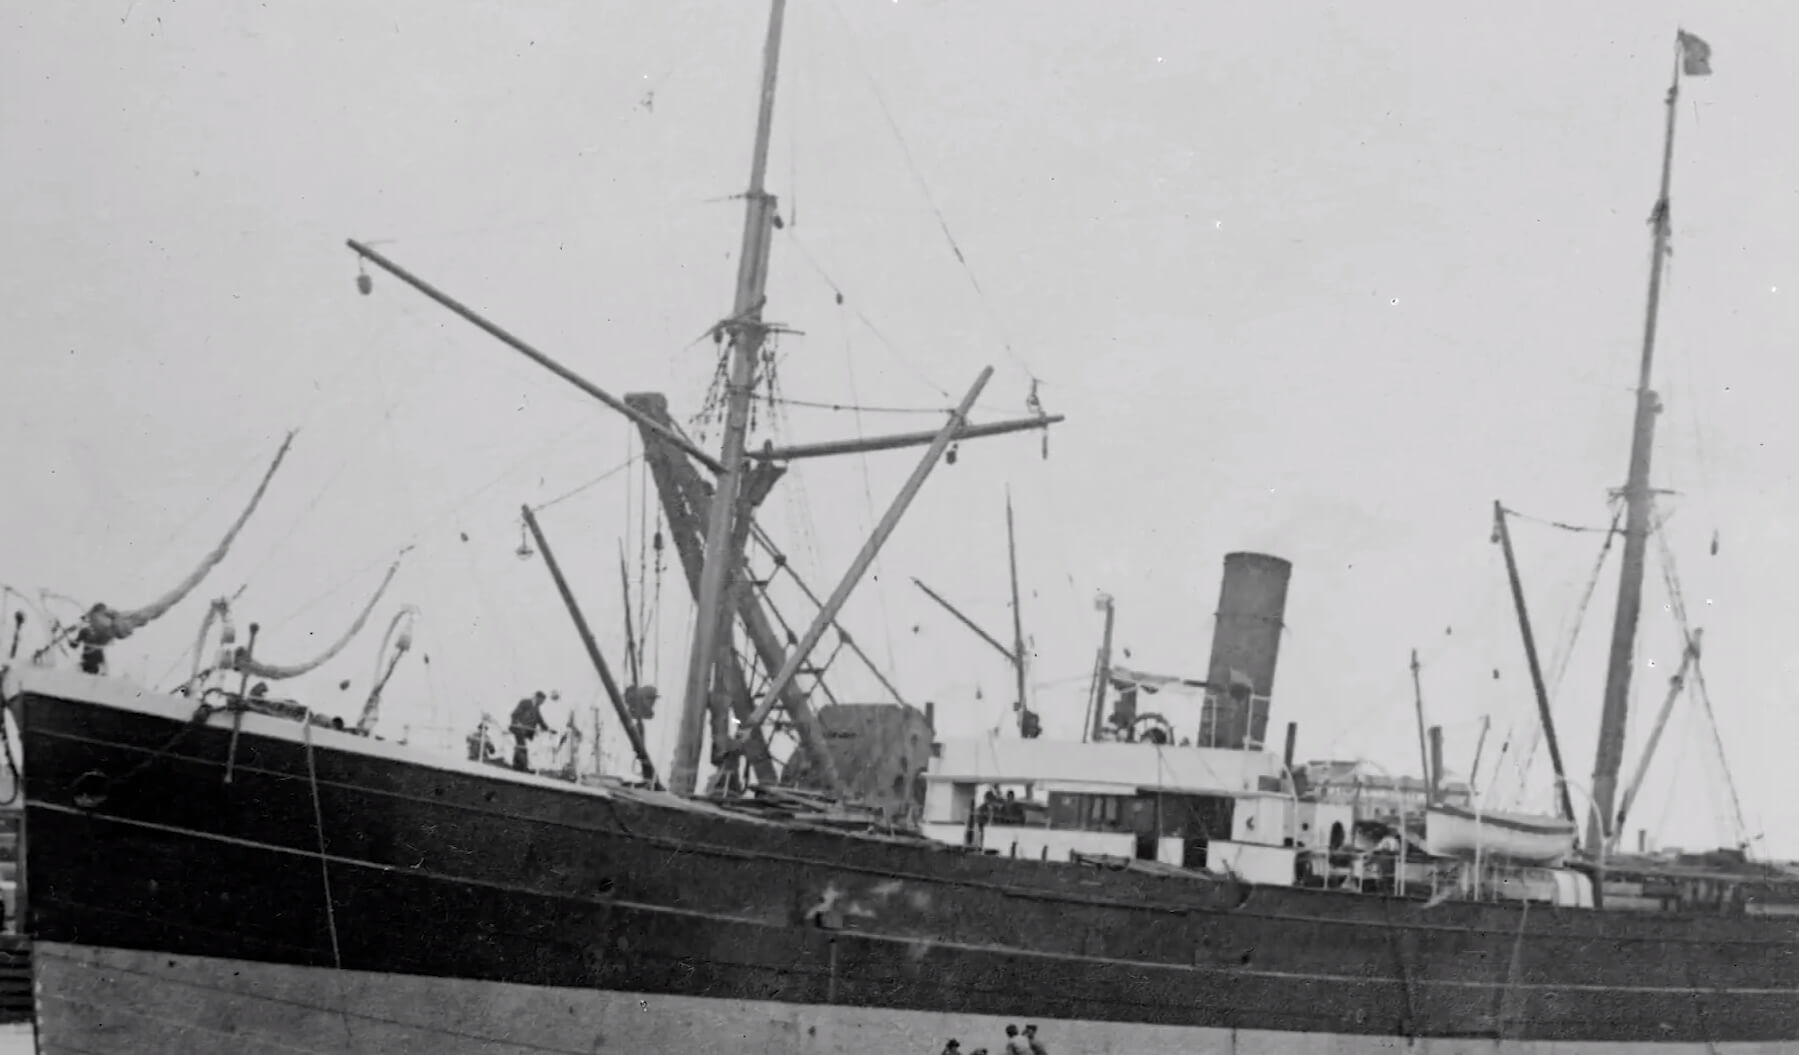 Огромный корабль найден спустя 140 лет после исчезновения — все благодаря новым технологиям. Изначально корабль «Немезида» был пассажирским, и только потом он начал перевозить грузы. Фото.